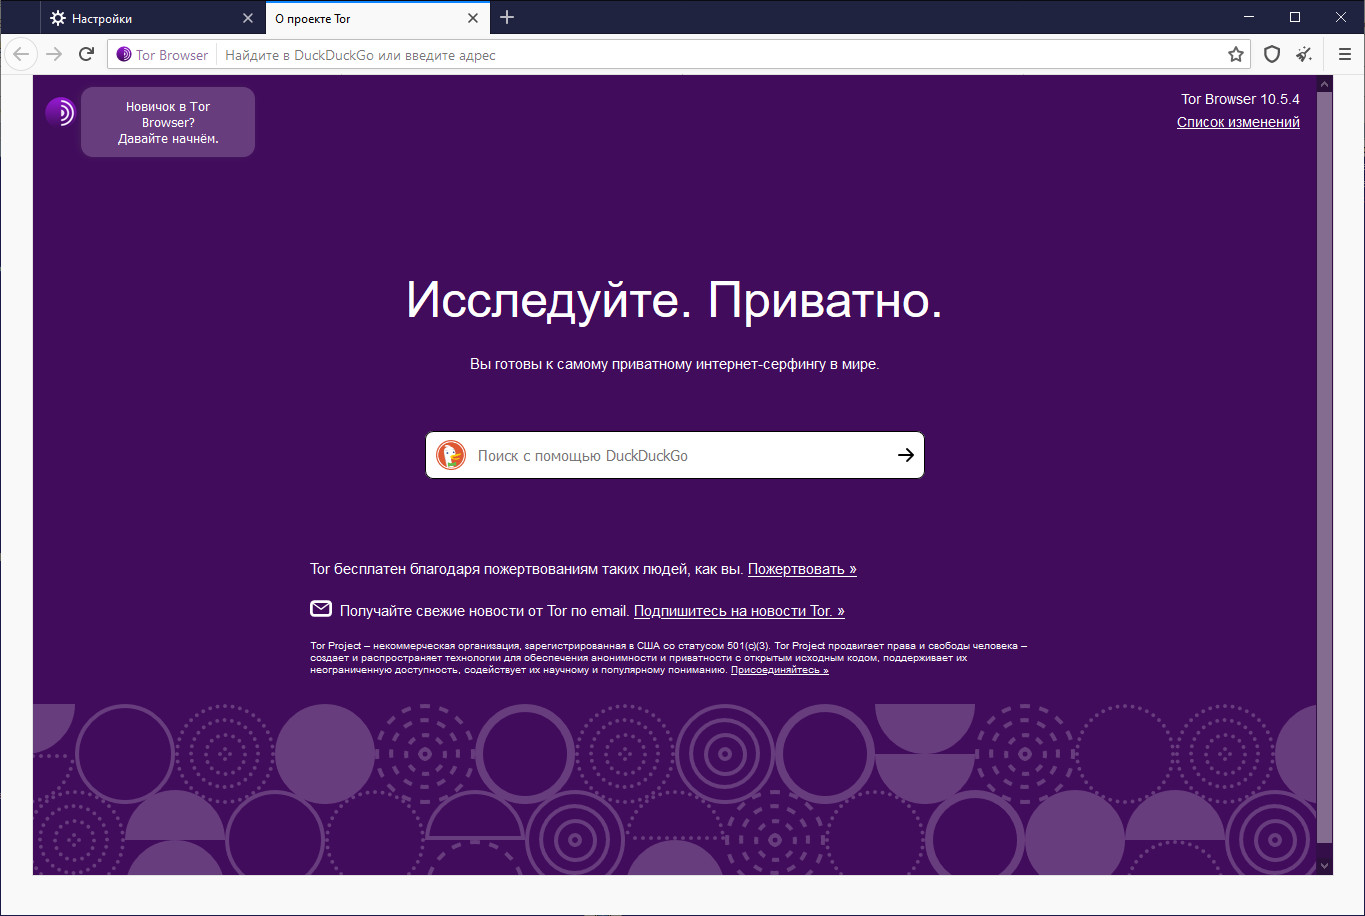 Скачать с официального сайта тор браузер на русском бесплатно через торрент даркнет blacksprut bundle браузер скачать даркнет